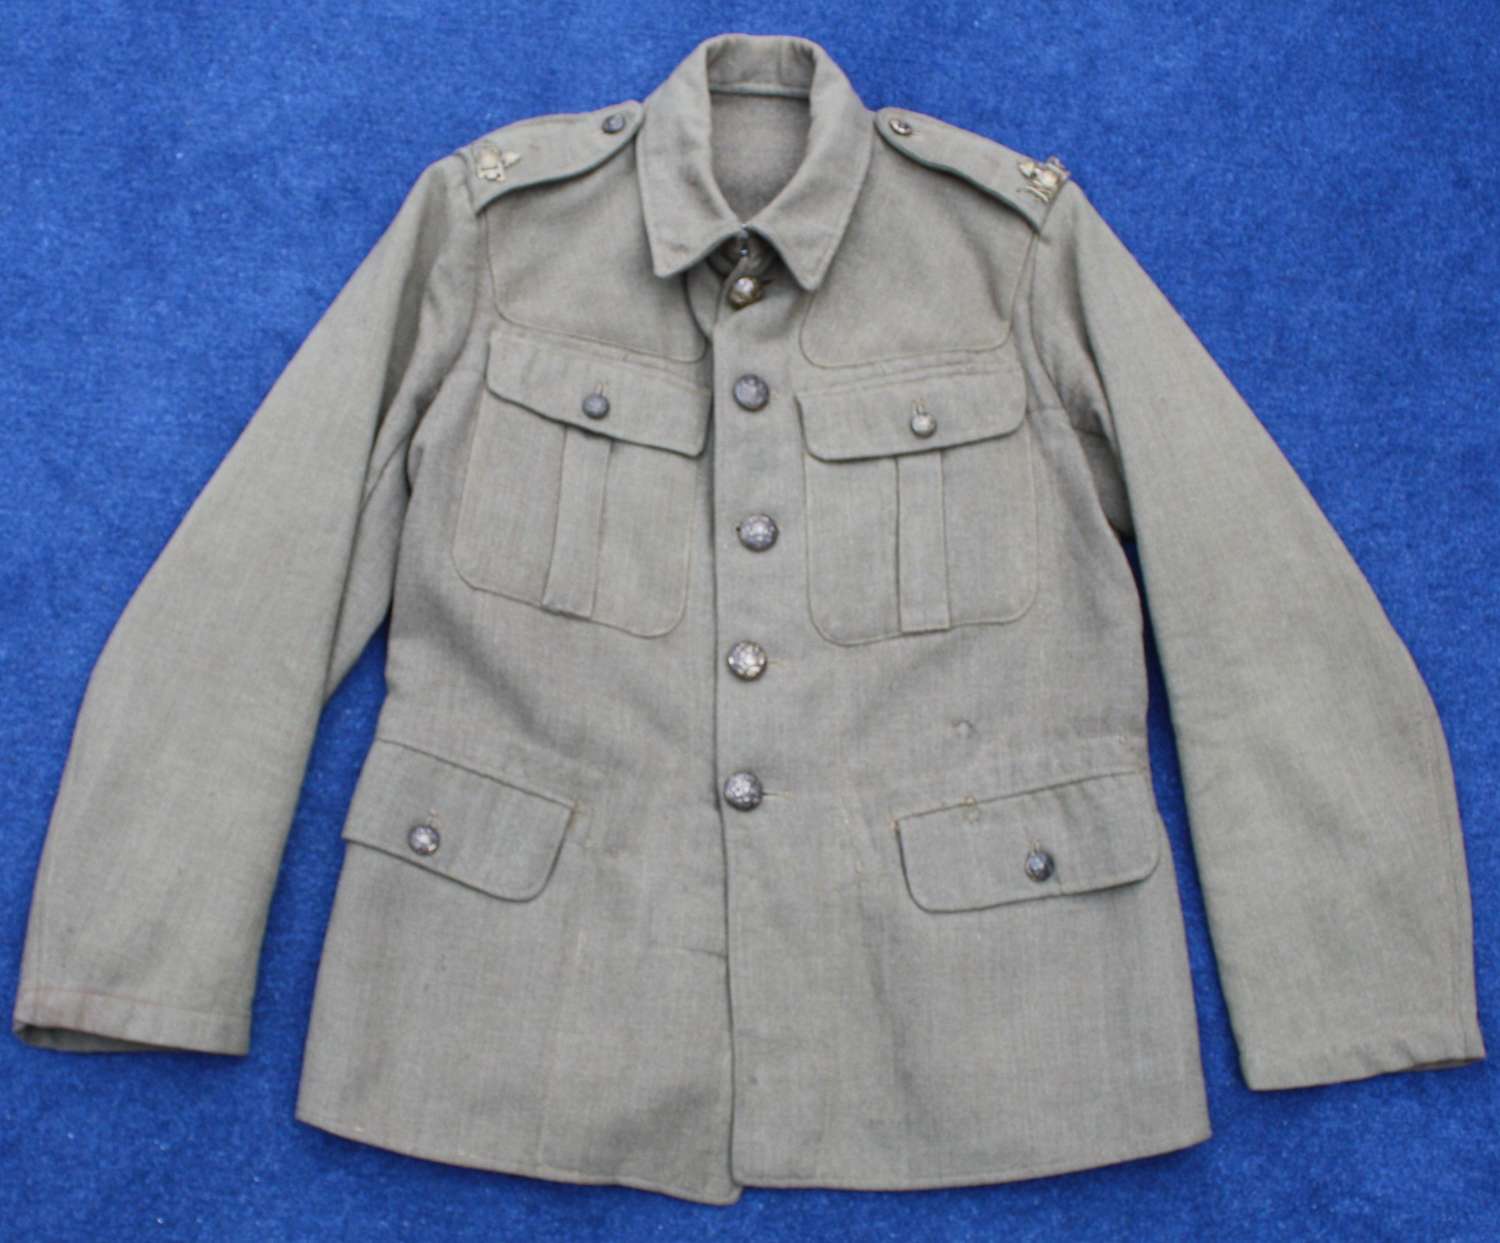 1918 Pattern British Other Ranks Khaki service dress tunic. Dated 1920